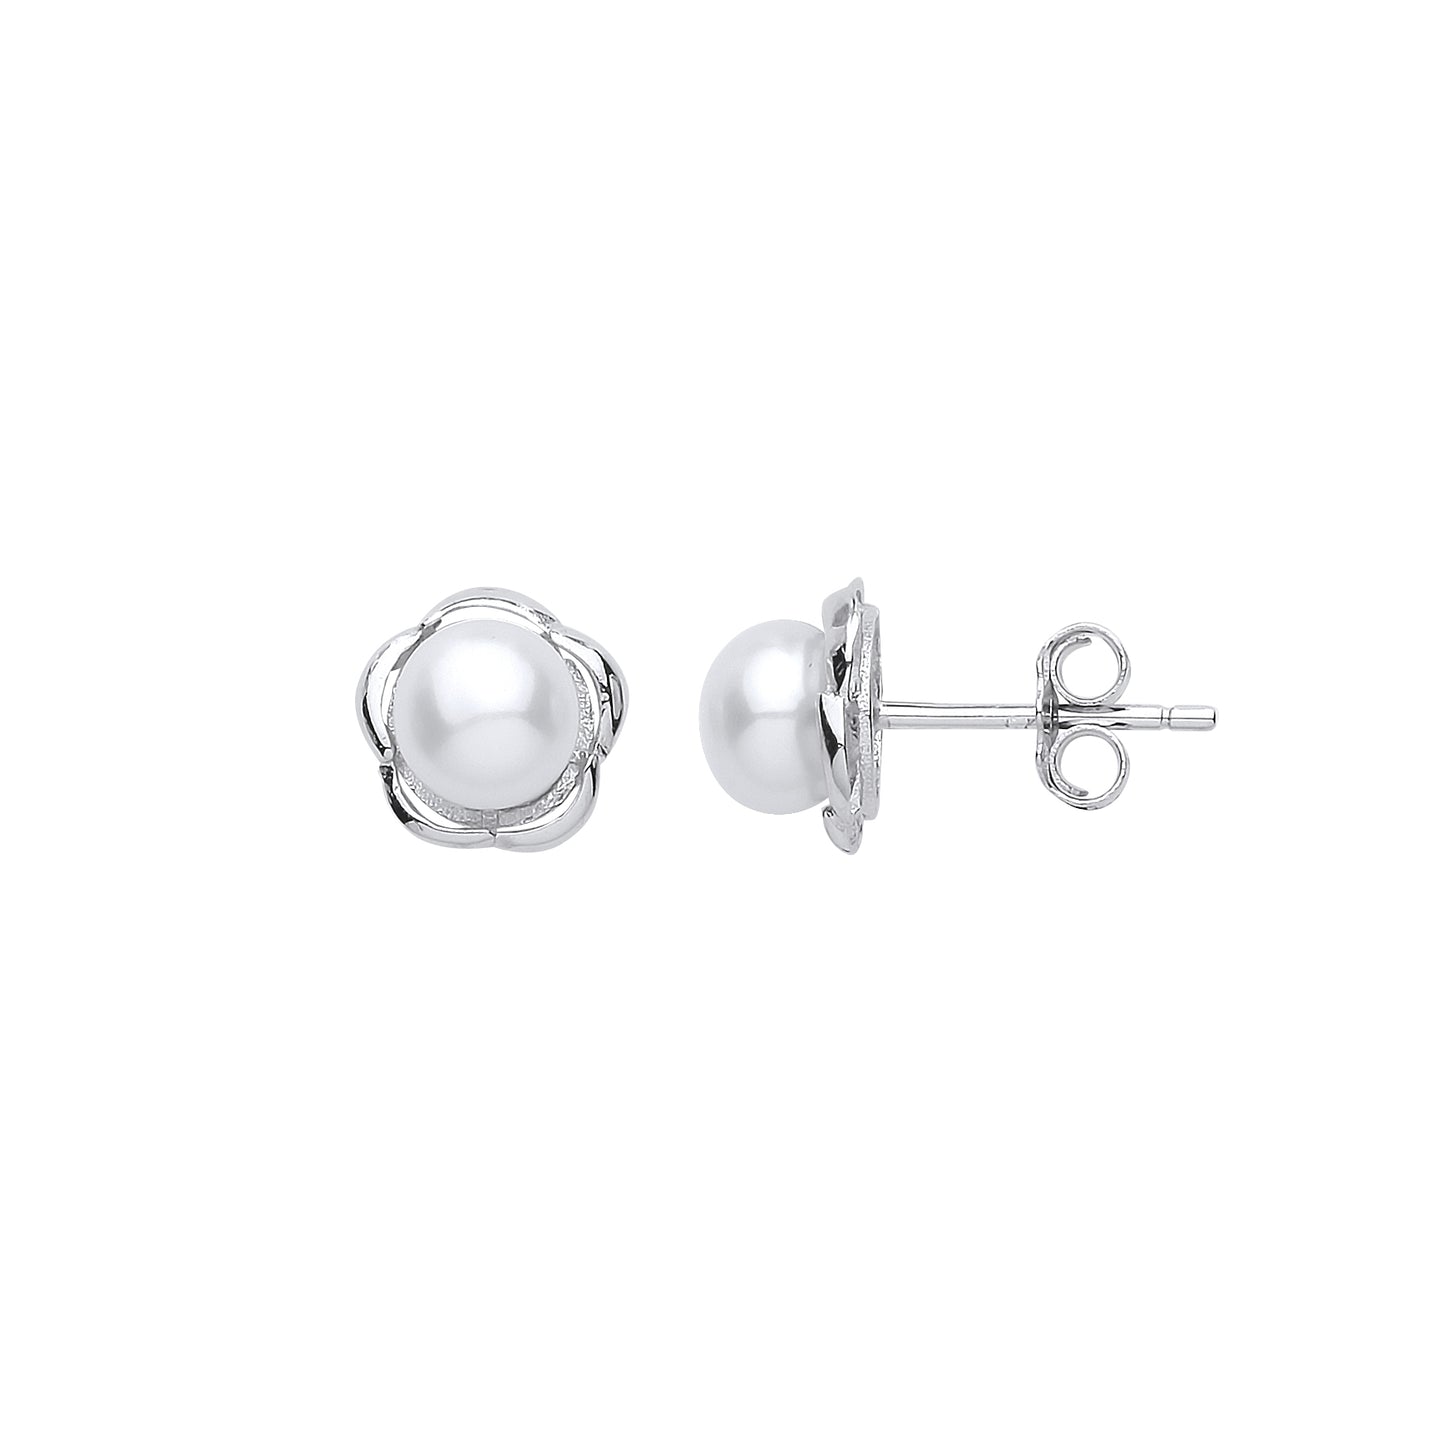 Silver  Pearl Full Moon Daisy Stud Earrings 6mm - GVE914